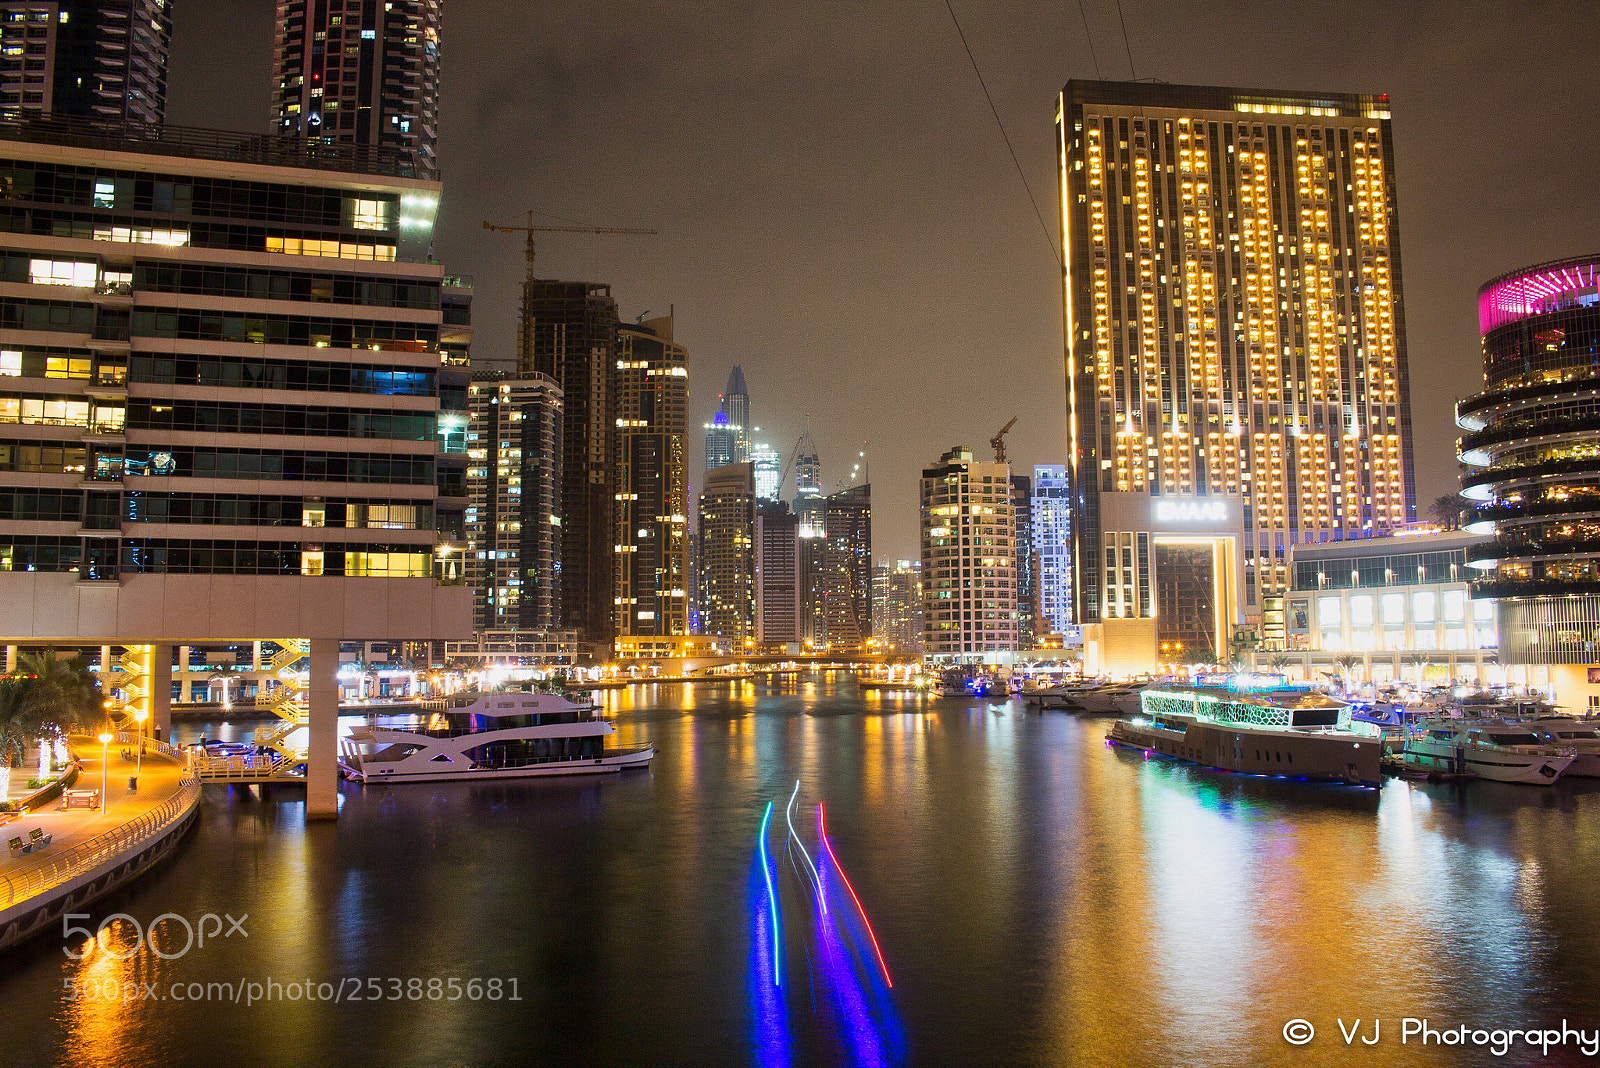 Canon EOS 700D (EOS Rebel T5i / EOS Kiss X7i) sample photo. Dubai marina at night photography